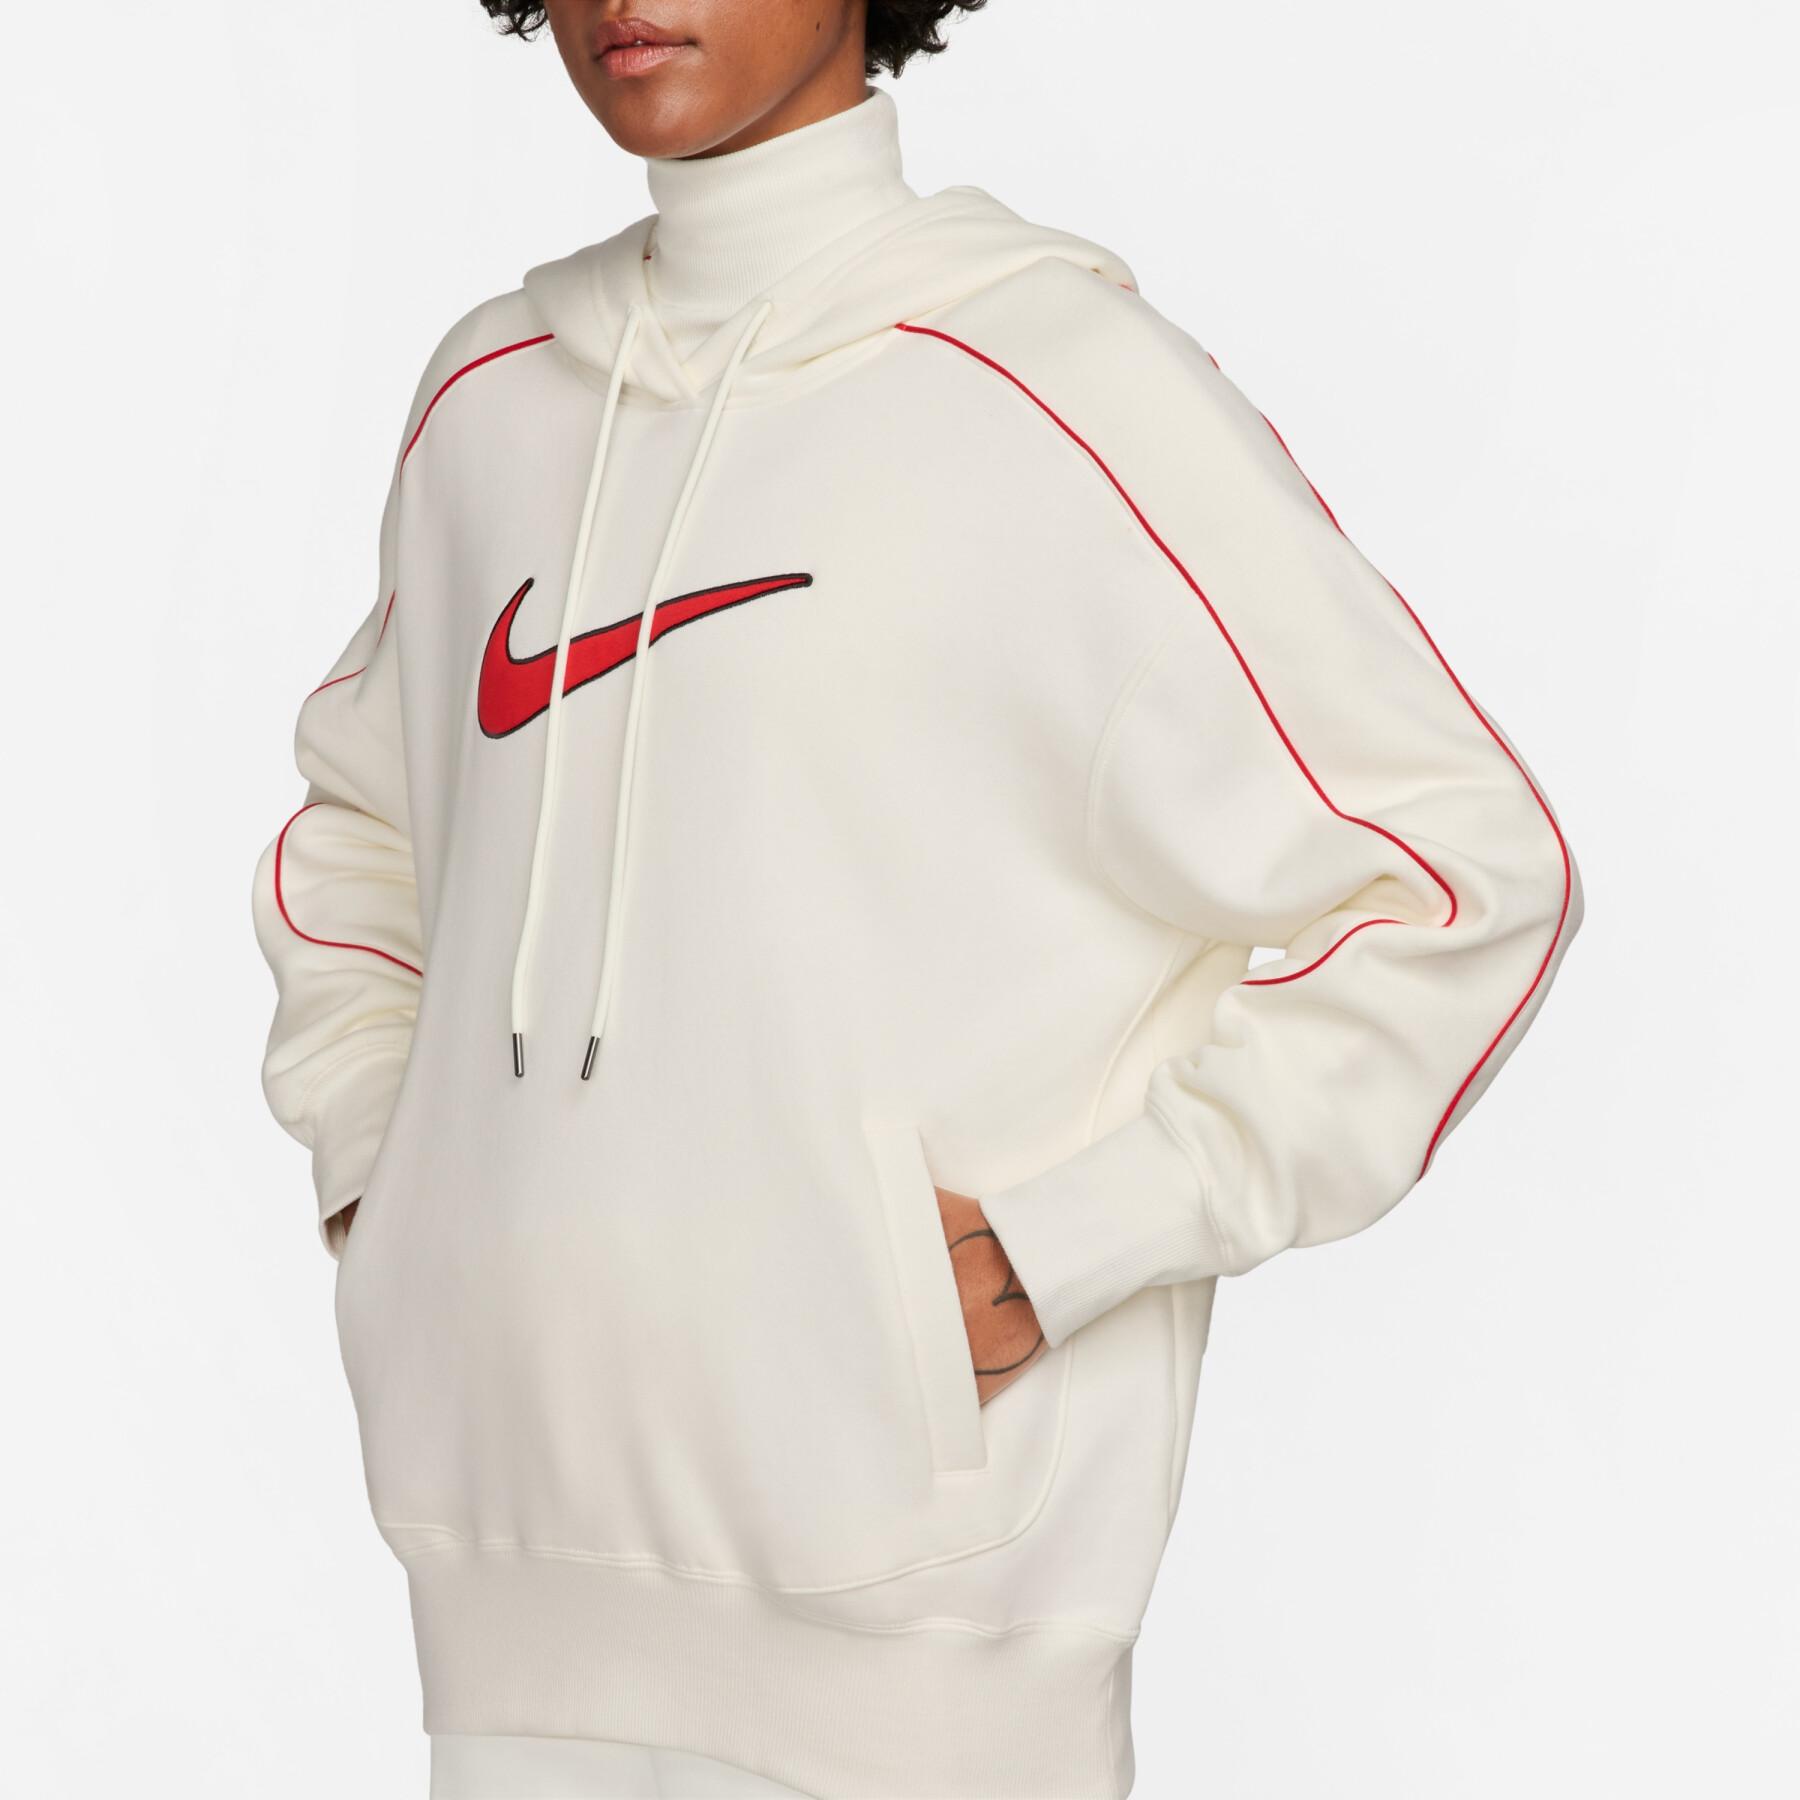 Women's oversized hooded fleece sweatshirt Nike - Sweatshirts - Textile -  Handball wear